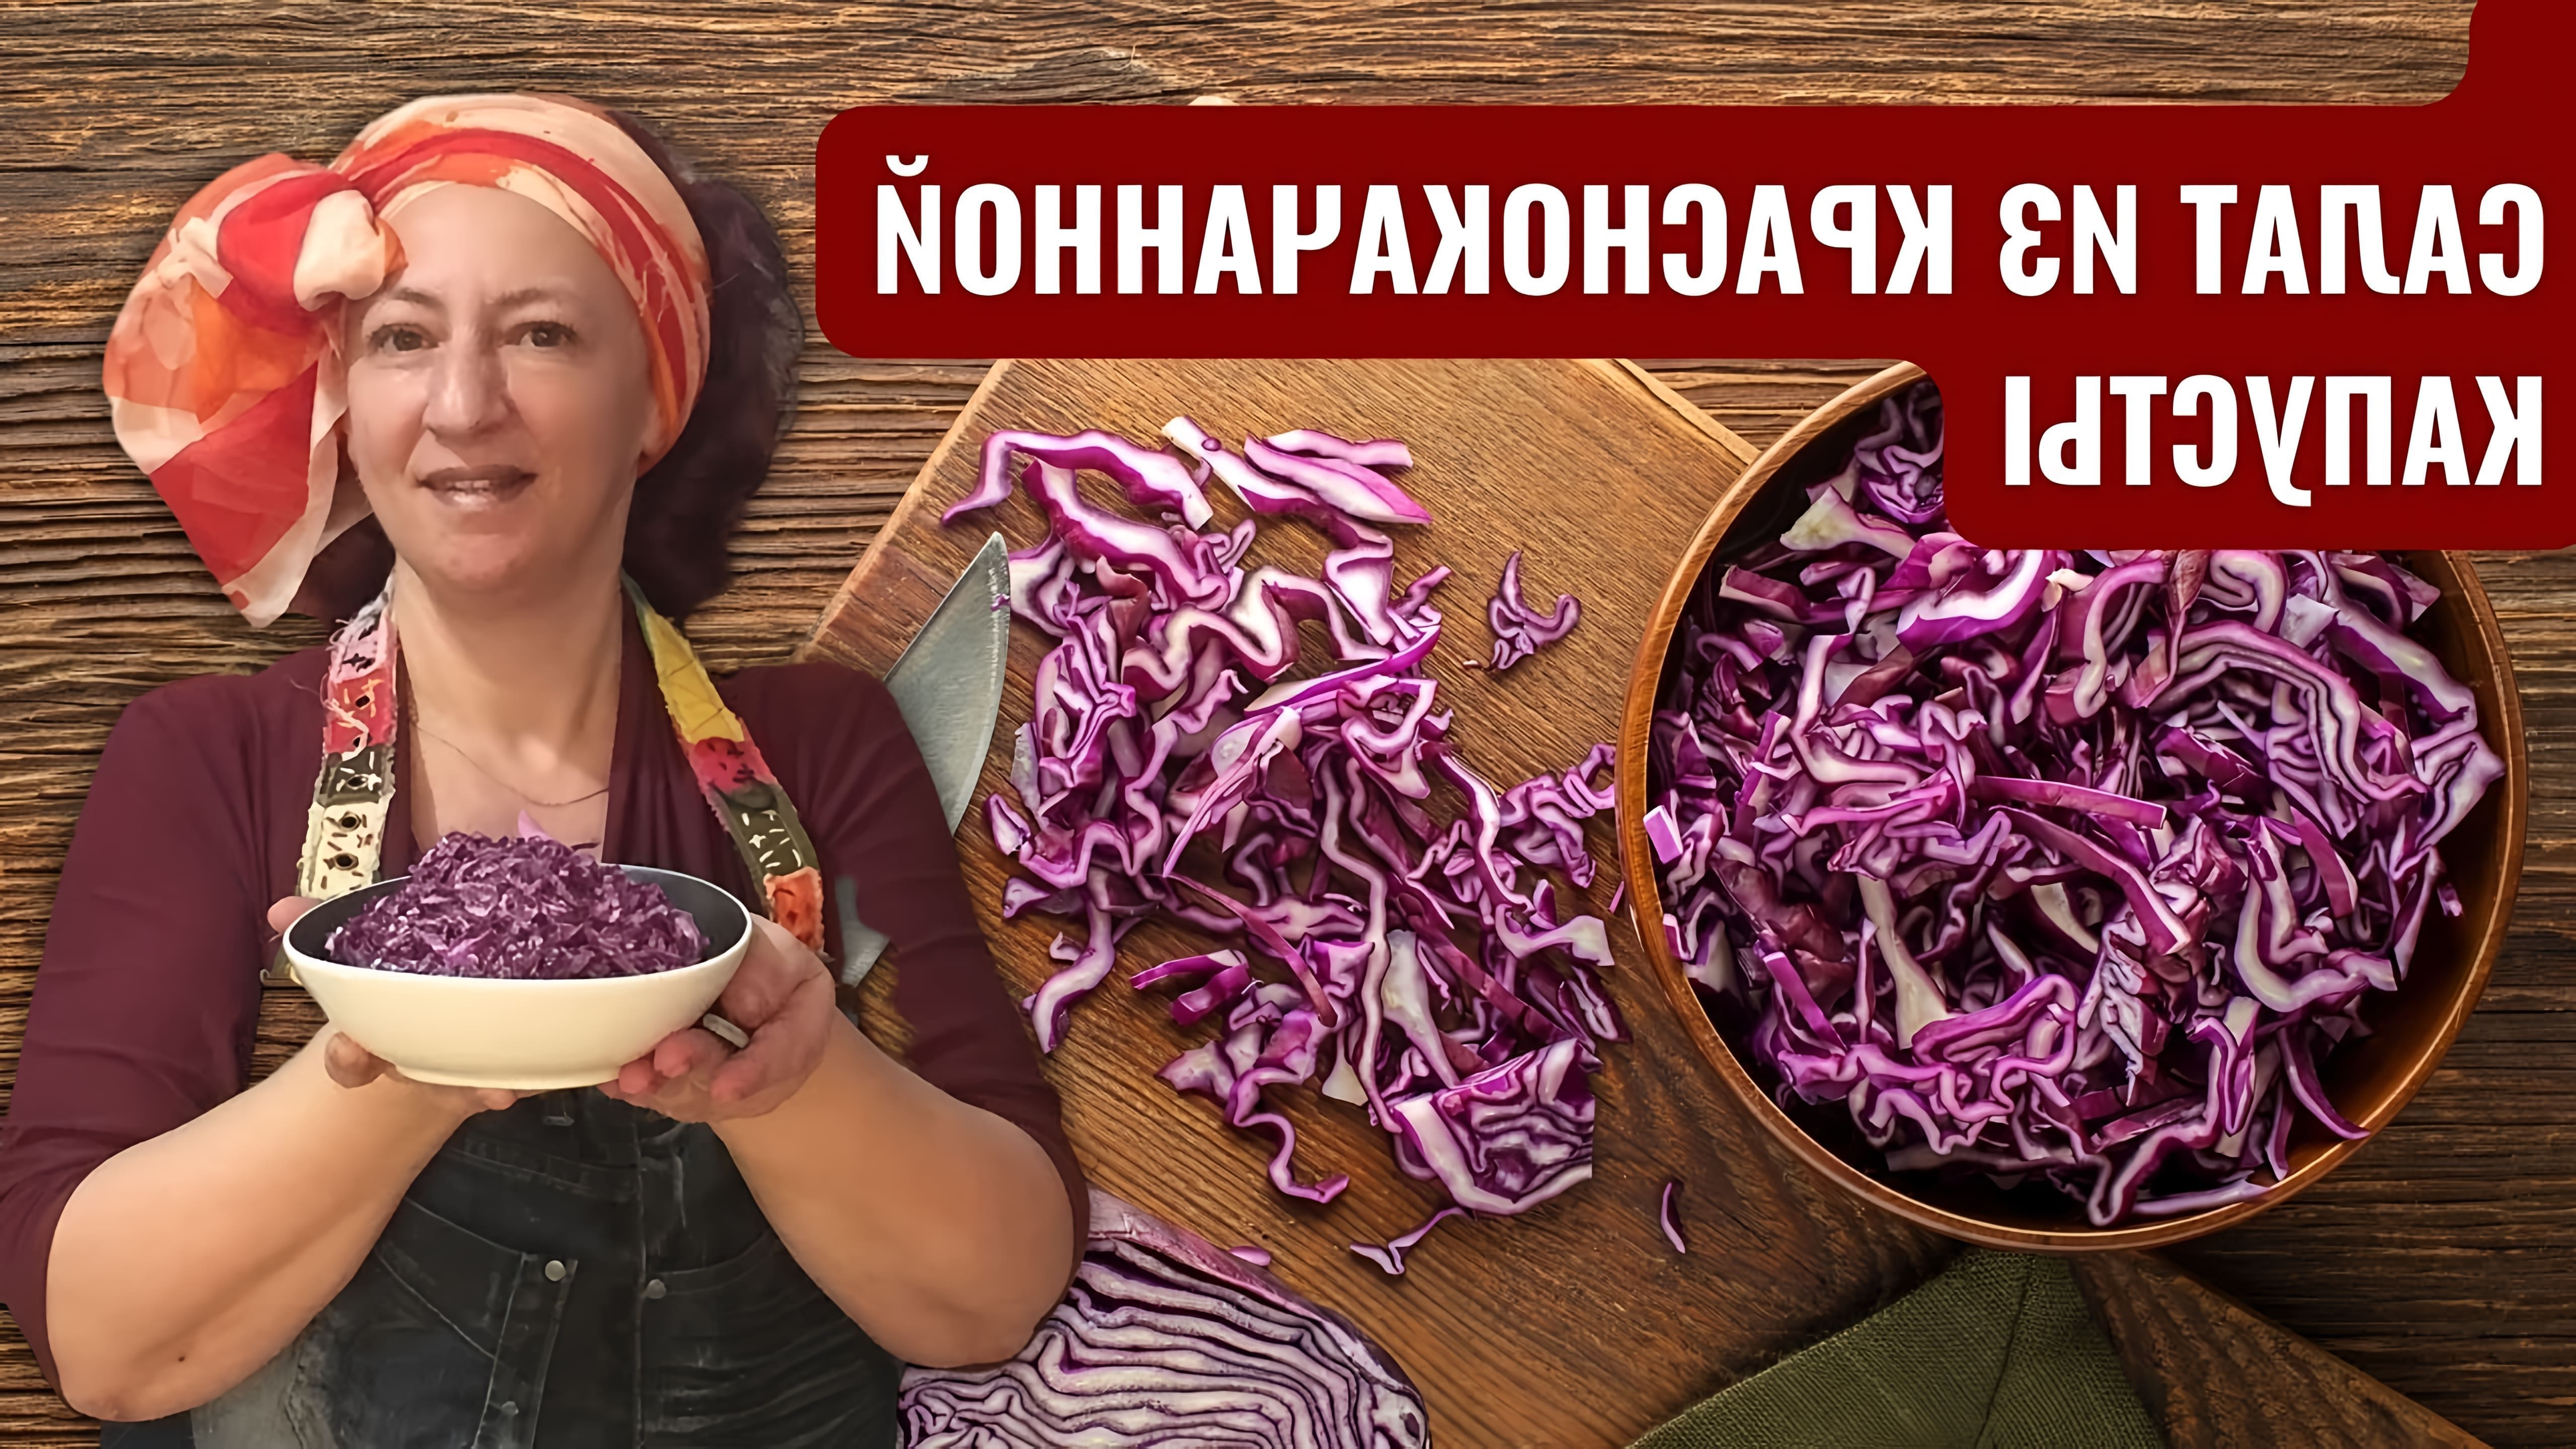 В этом видео демонстрируется рецепт салата из краснокочанной капусты, который является одним из любимых блюд в Израиле